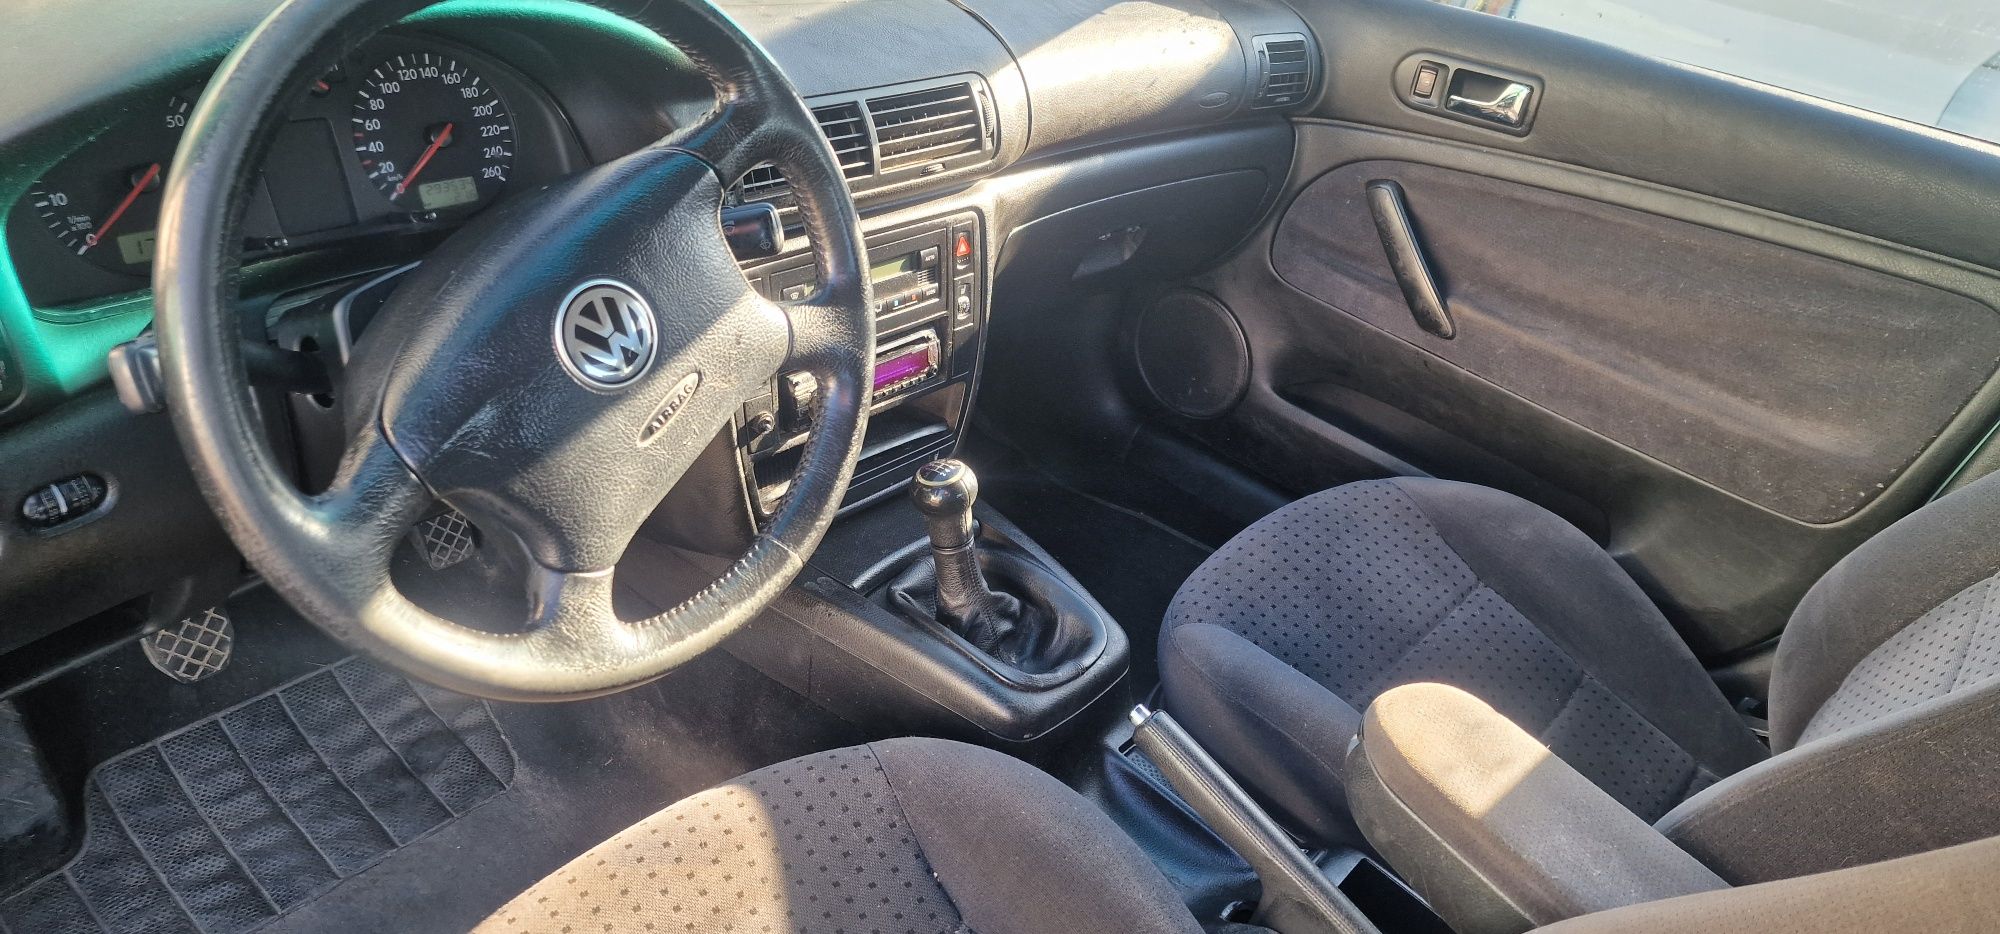 Volkswagen Passat 1.8 benzyna